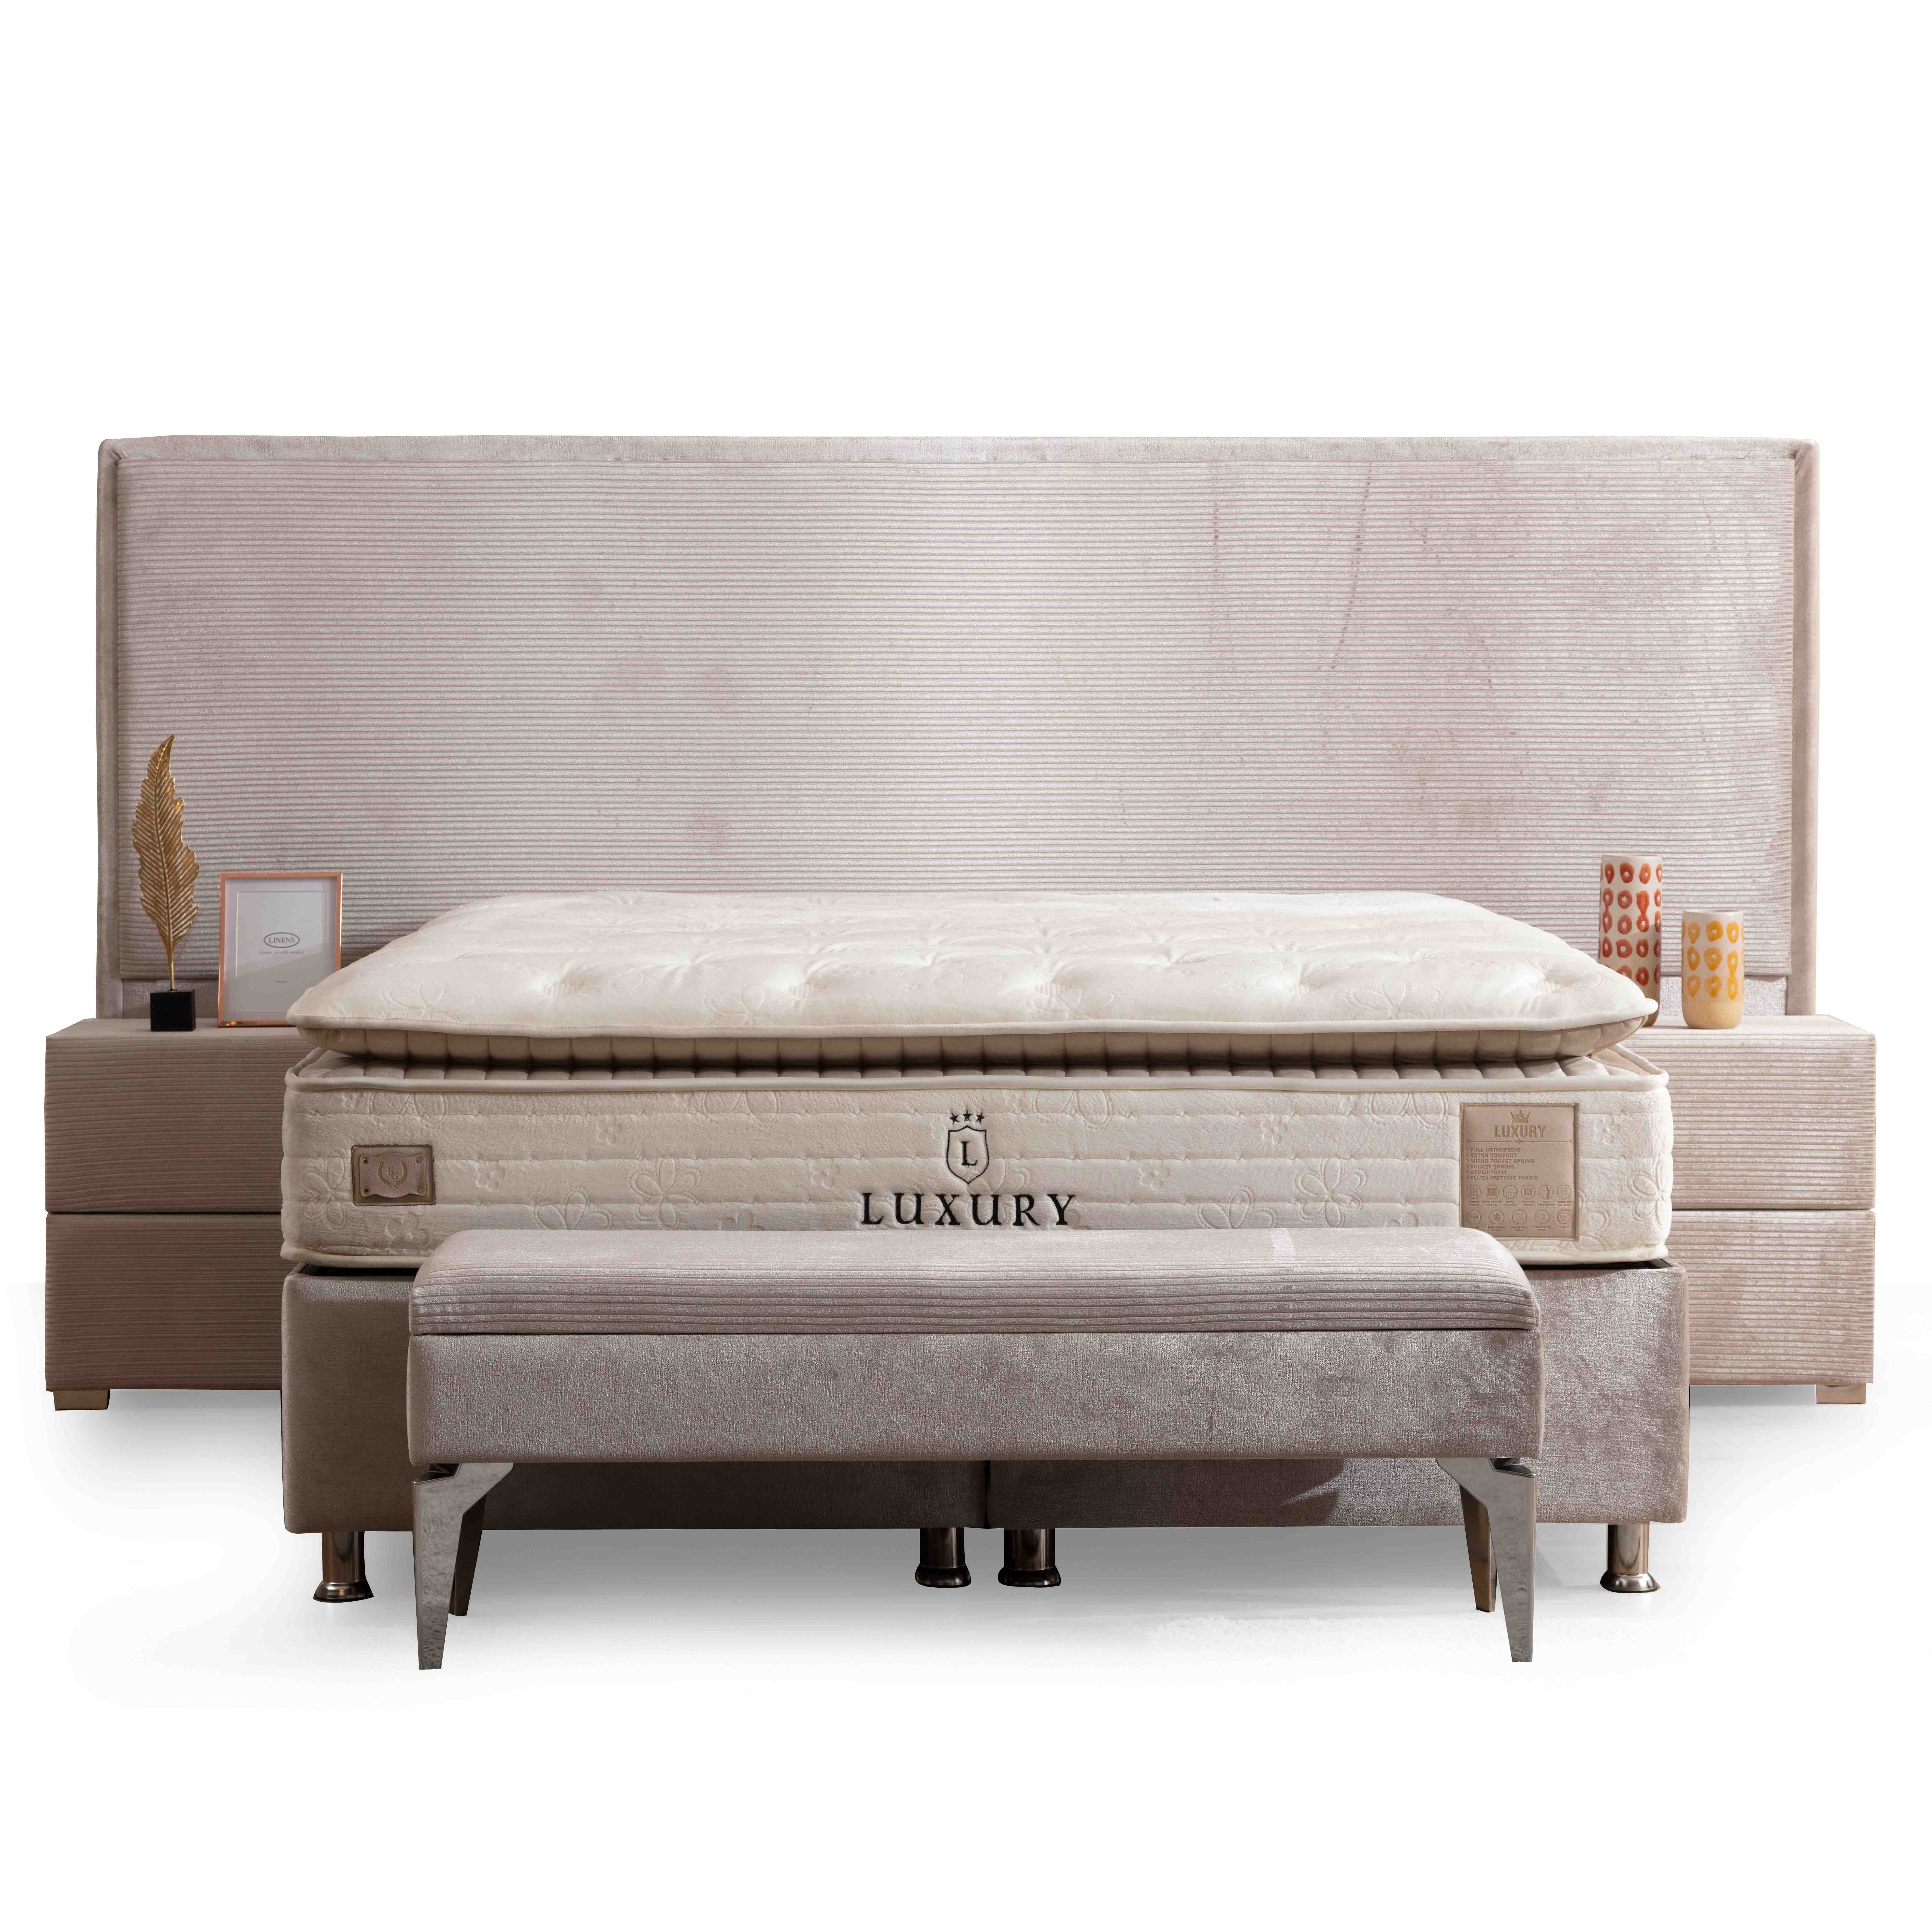 Havana Bed With Storage 120*200